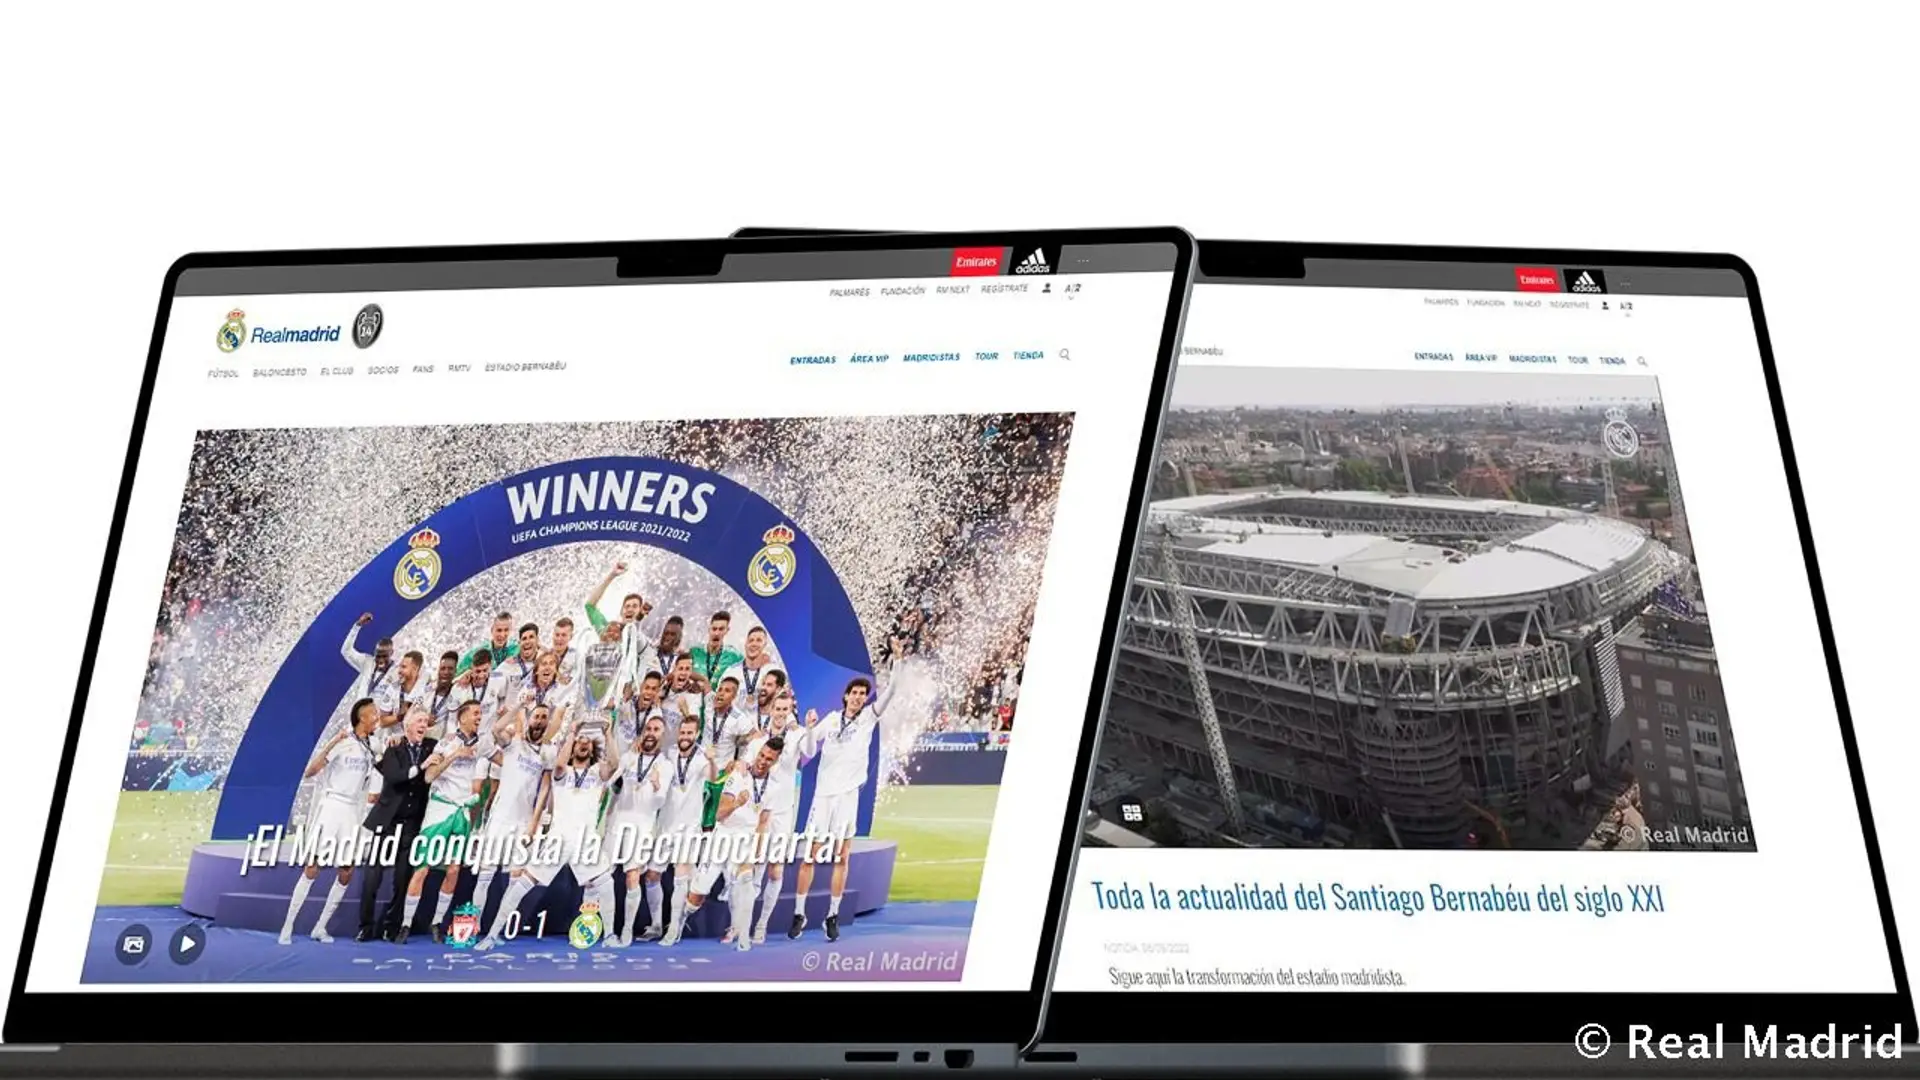 Die offizielle Website von Real Madrid ist die meistbesuchte der Welt unter den Fußballvereinen